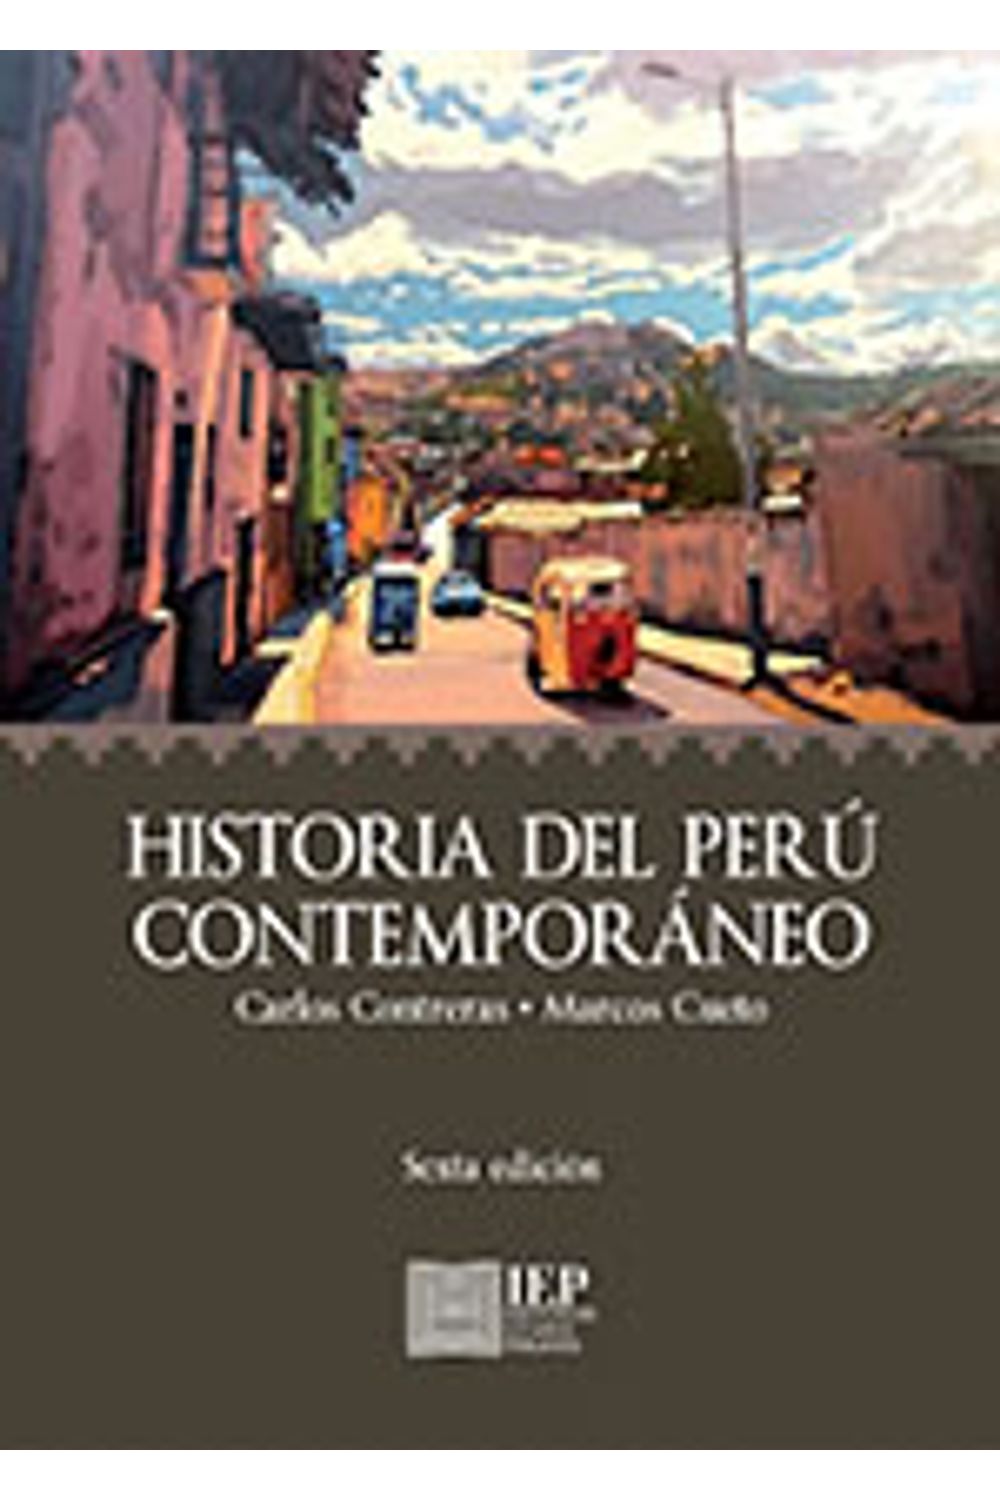 bm-historia-del-peru-contemporaneo-instituto-de-estudios-peruanos-iep-9789972517198